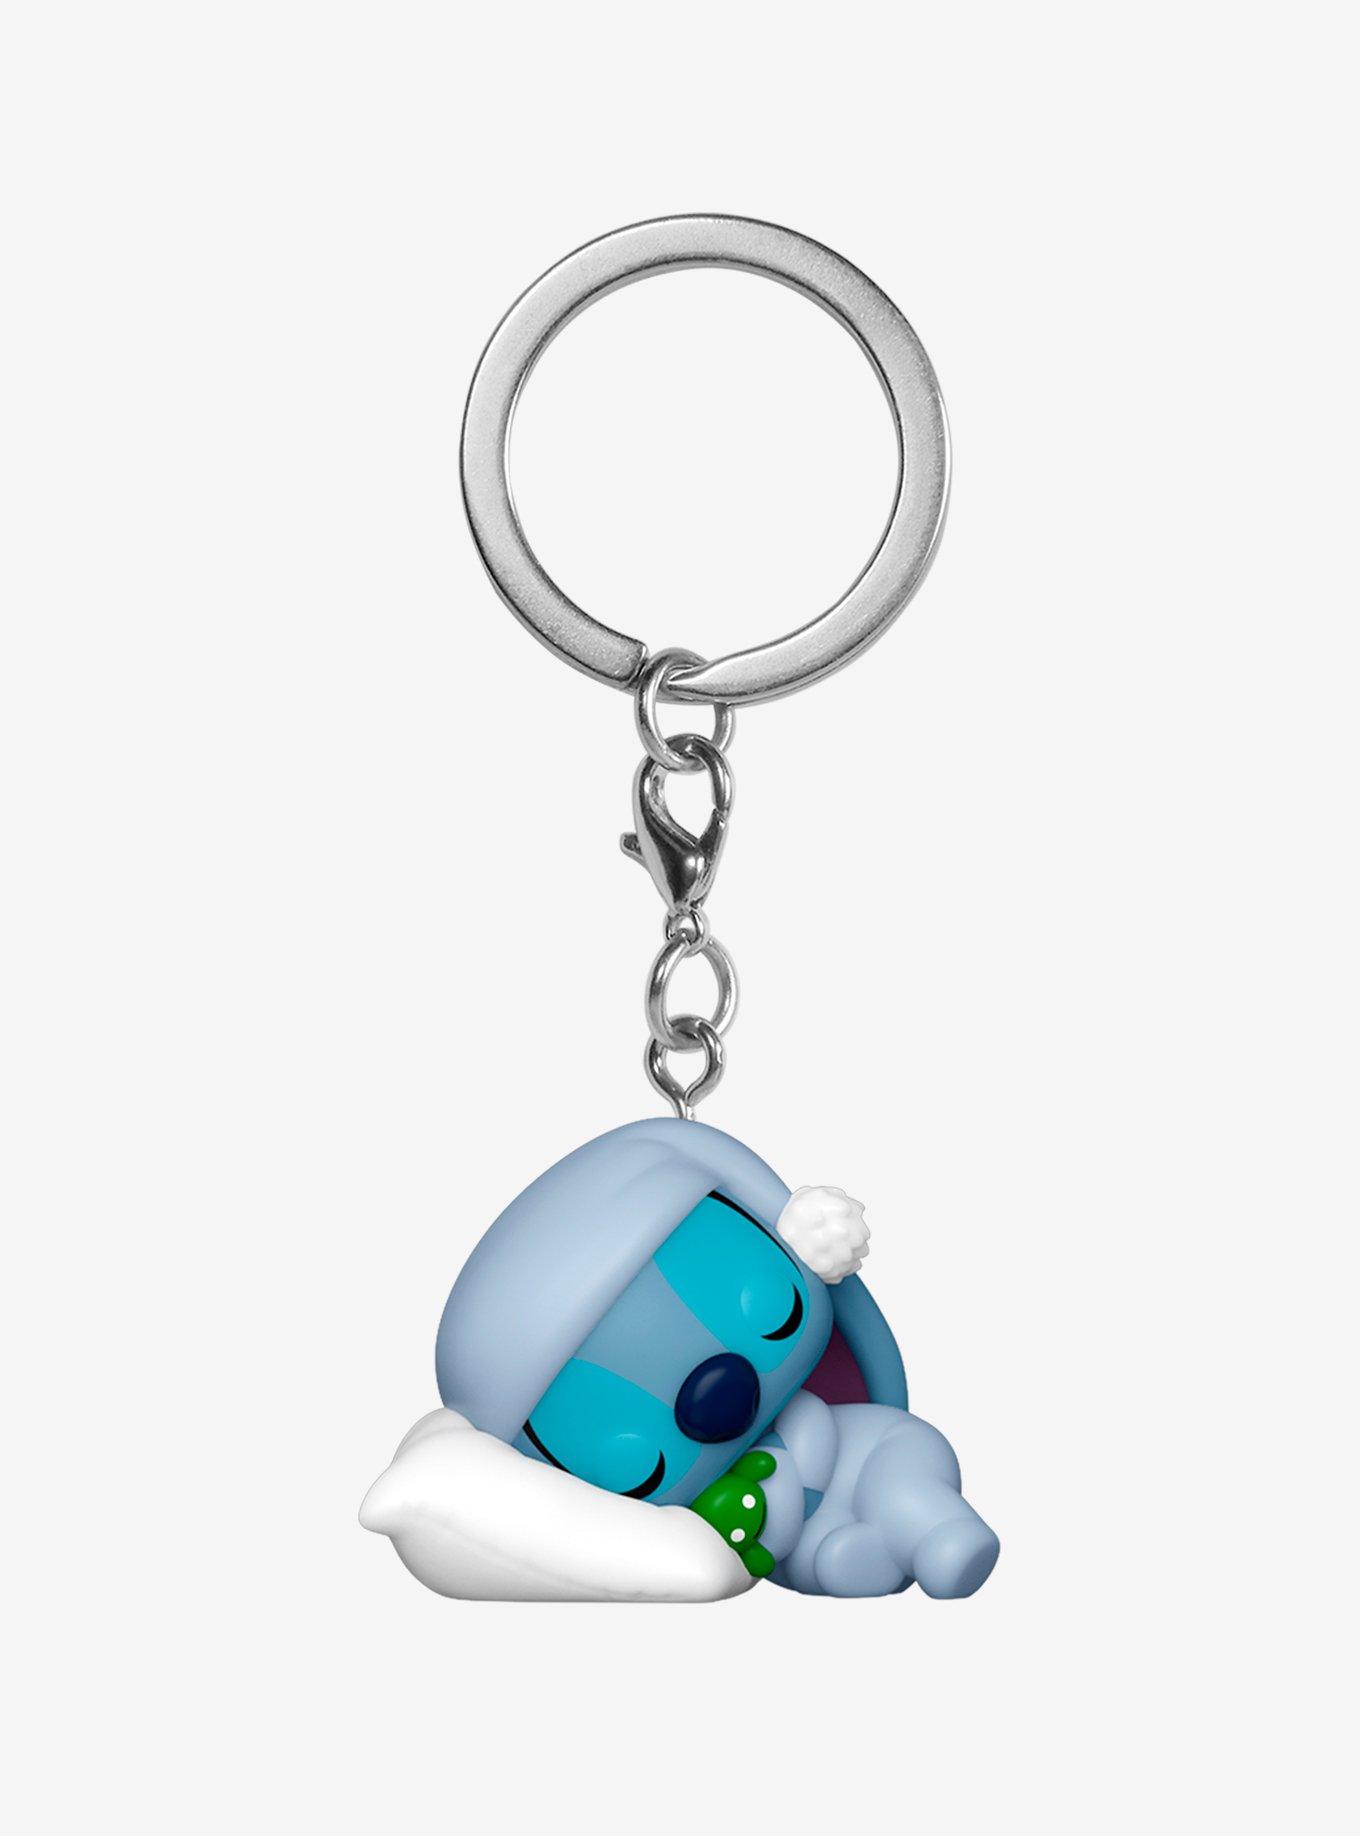 Funko Pocket POP Keychain: Disney - Stitch Keychain